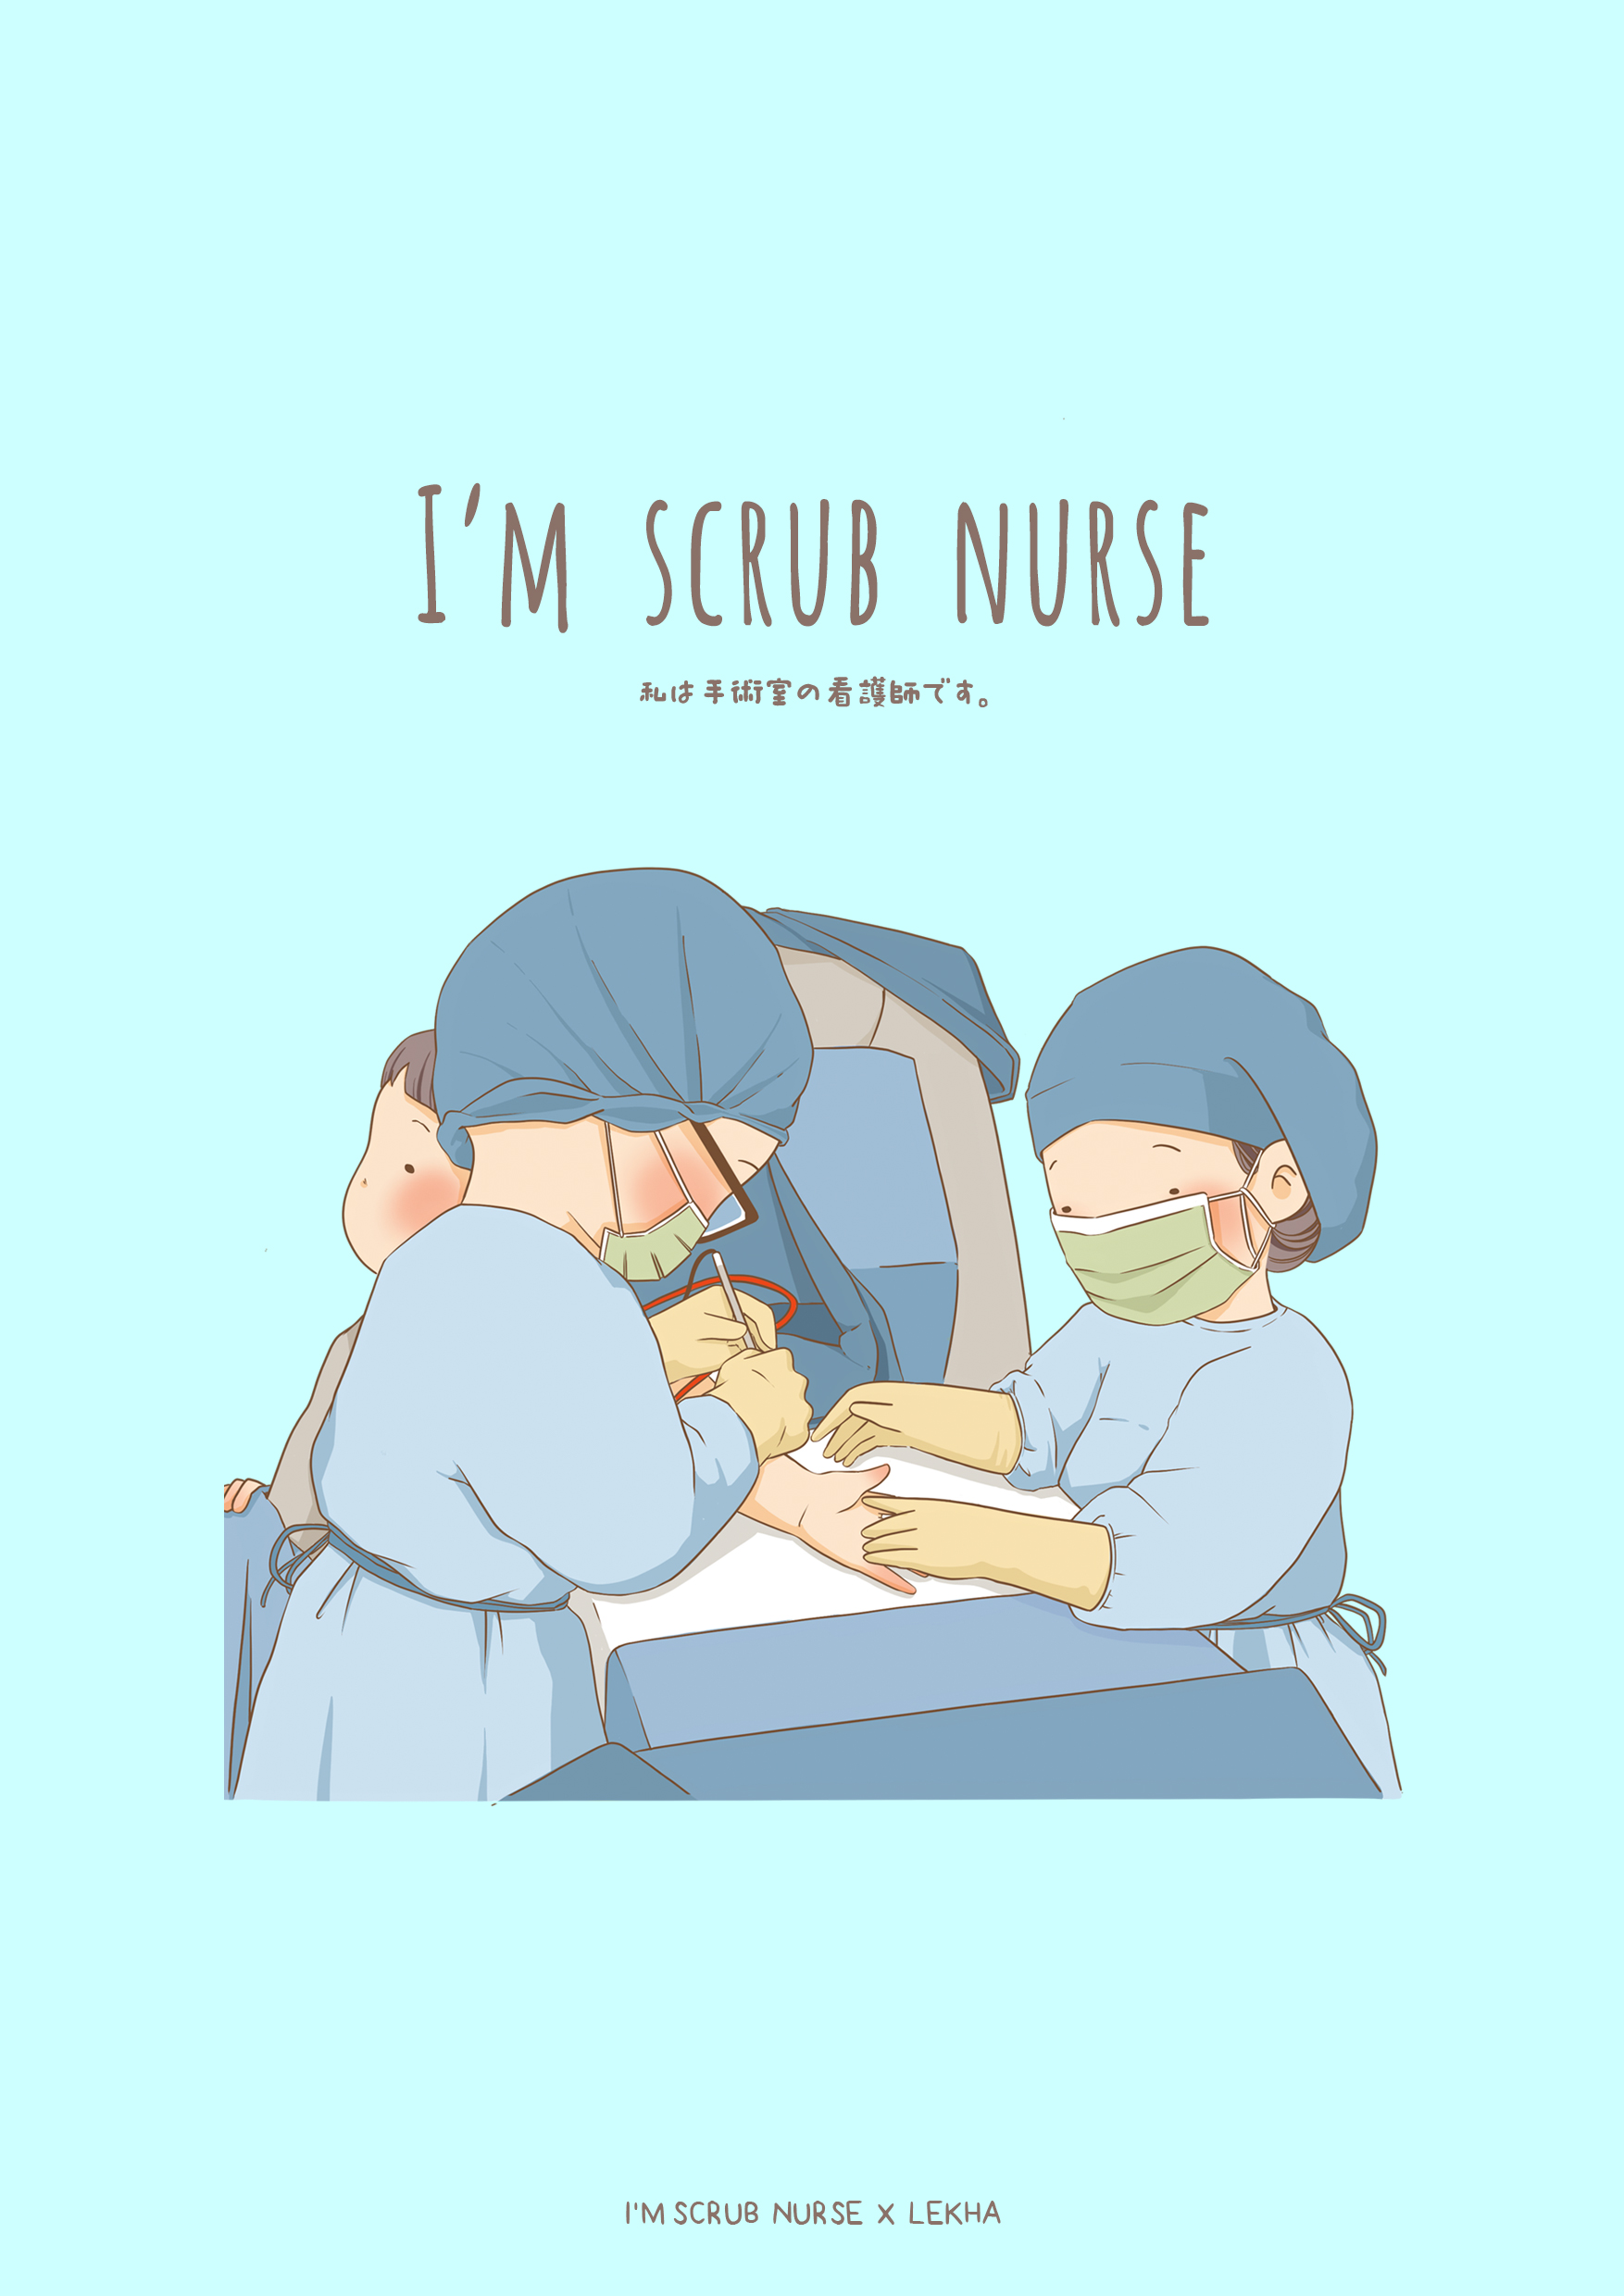 I'm scrub nurse